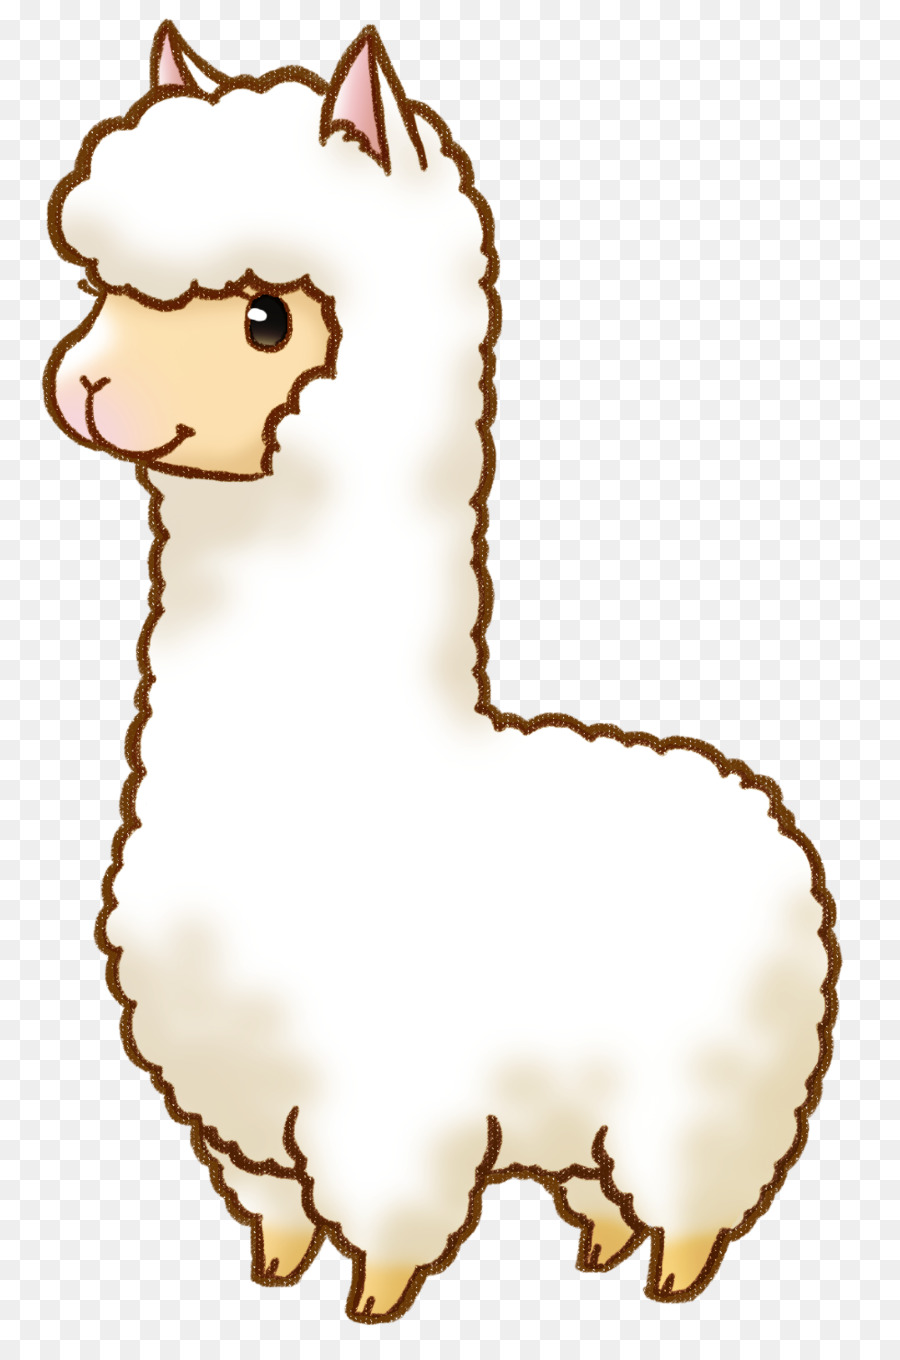 Llama cartoon clip art. Alpaca clipart drawing